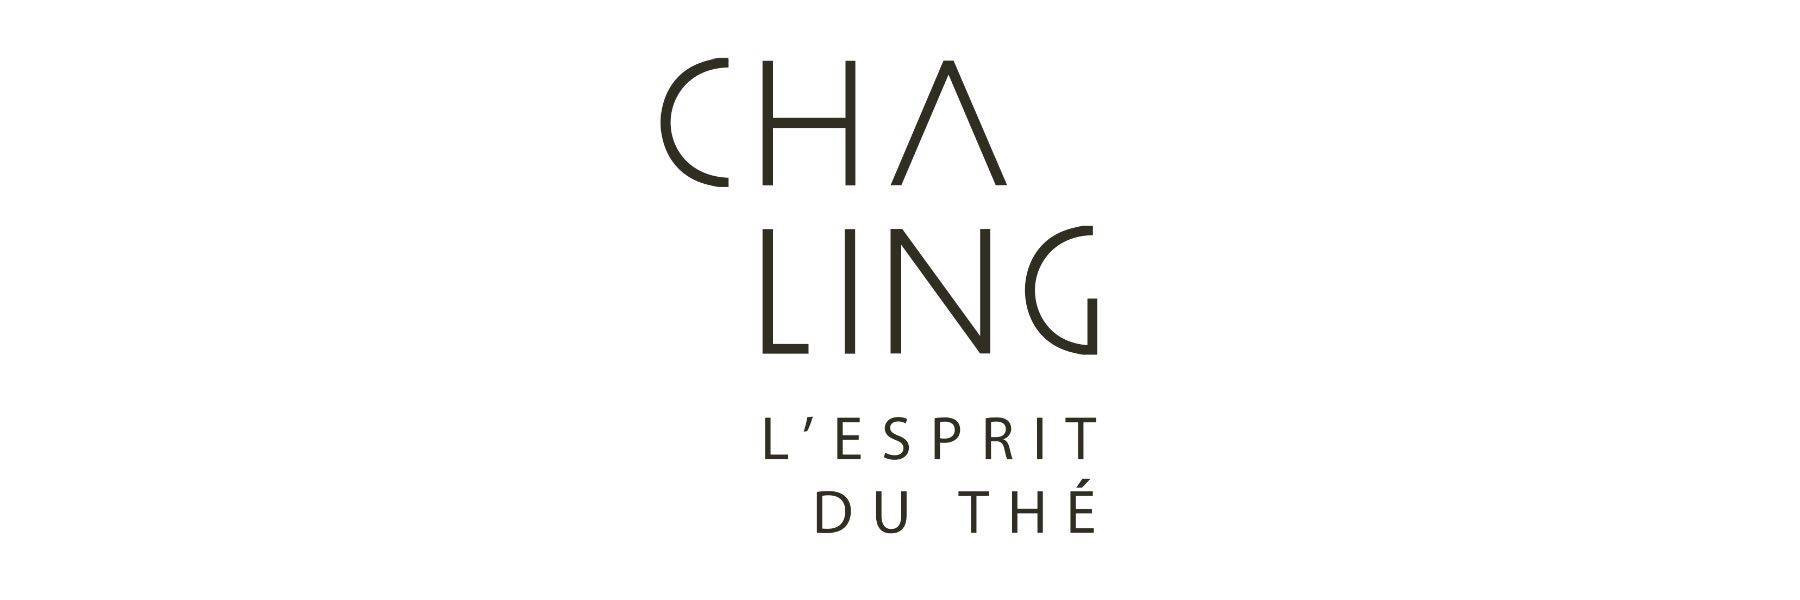 cha ling茶灵l'esprit du th07由lvmh r&d专业研发,法国娇兰工厂